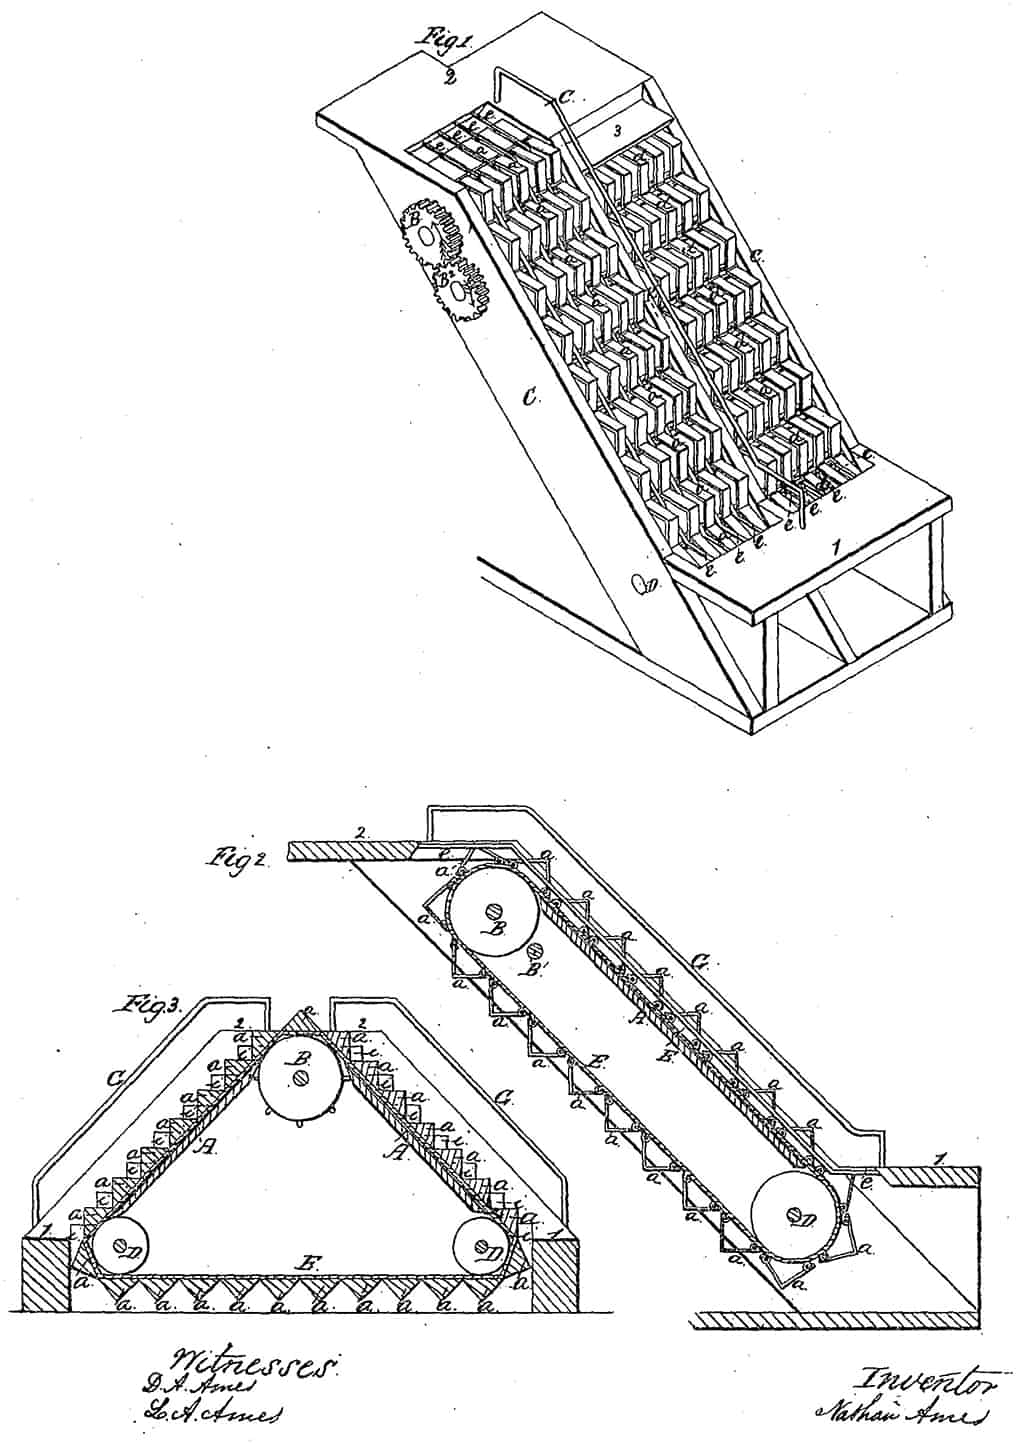 صورة عن تصميم السلالم المتحركة التي أطلق عليها اسم ”السلالم الدوارة“، التي صممها (نايثان آيمز) في التاسع من أغسطس سنة 1859.